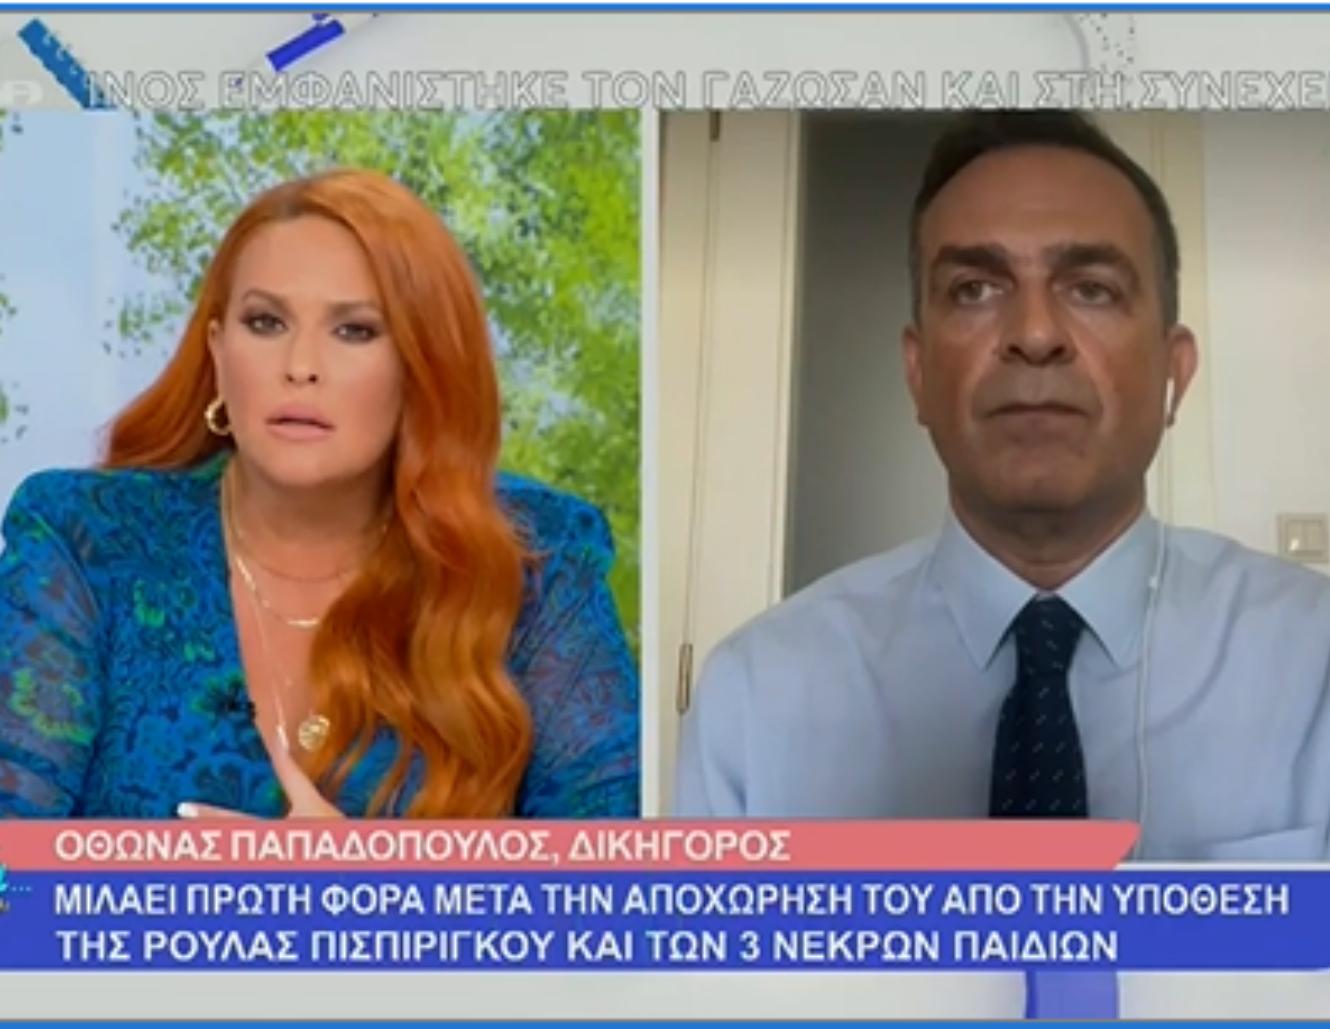 Πάτρα: Ο Όθων Παπαδόπουλος στη 1η συνέντευξη μετά την αποχώρηση μιλάει για όλα (βίντεο)